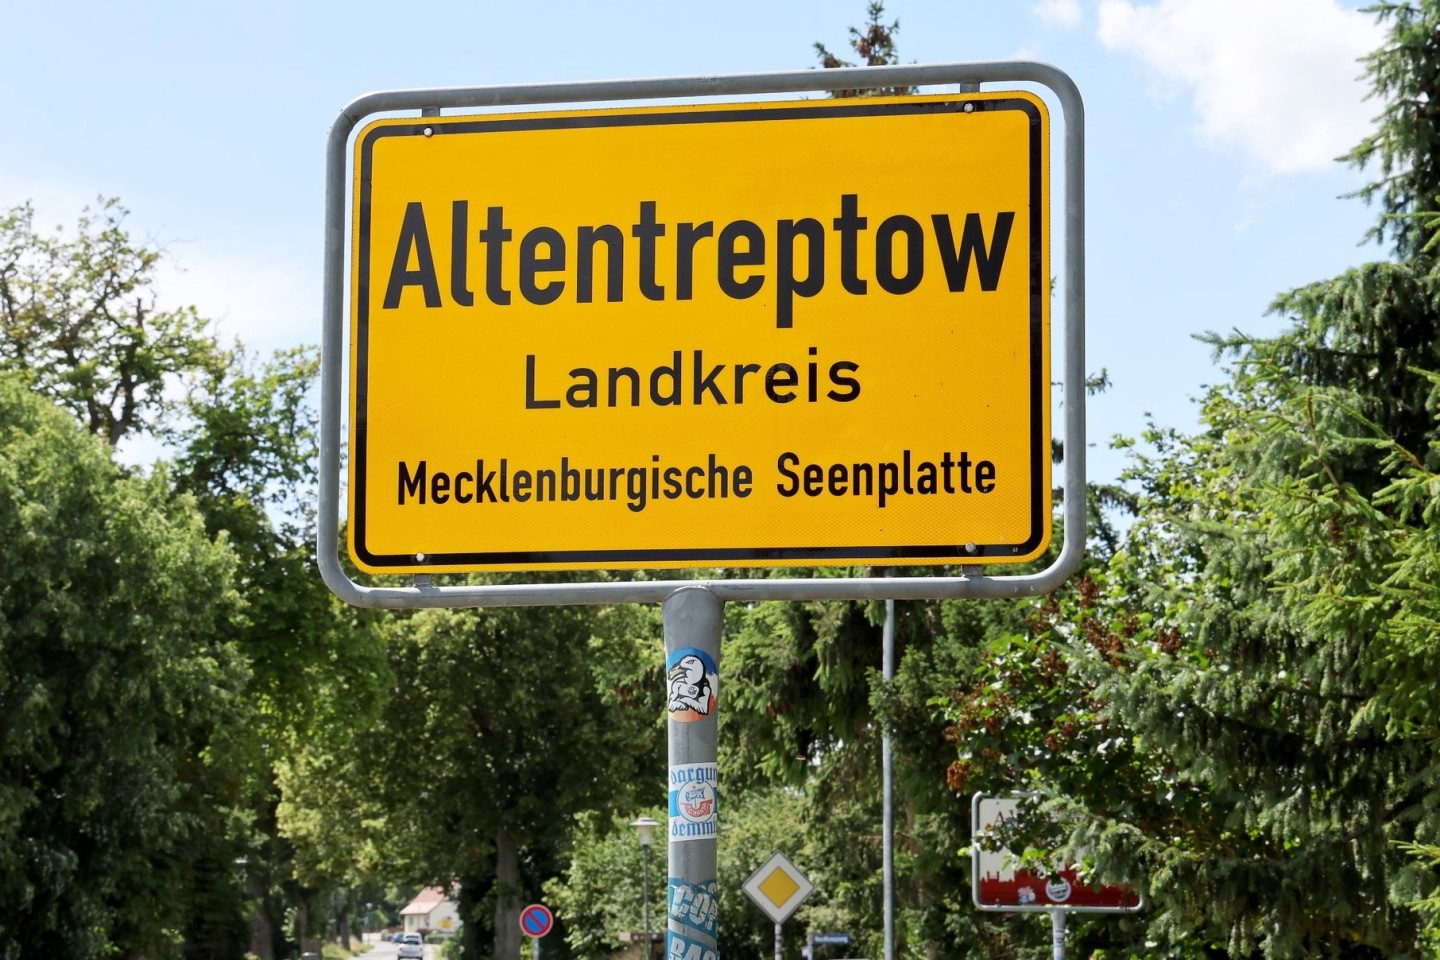 Der Drogentod einer 13-Jährigen aus Altentreptow in Mecklenburg-Vorpommern sorgt für viele Fragezeichen und Angst vor weiteren Fällen.